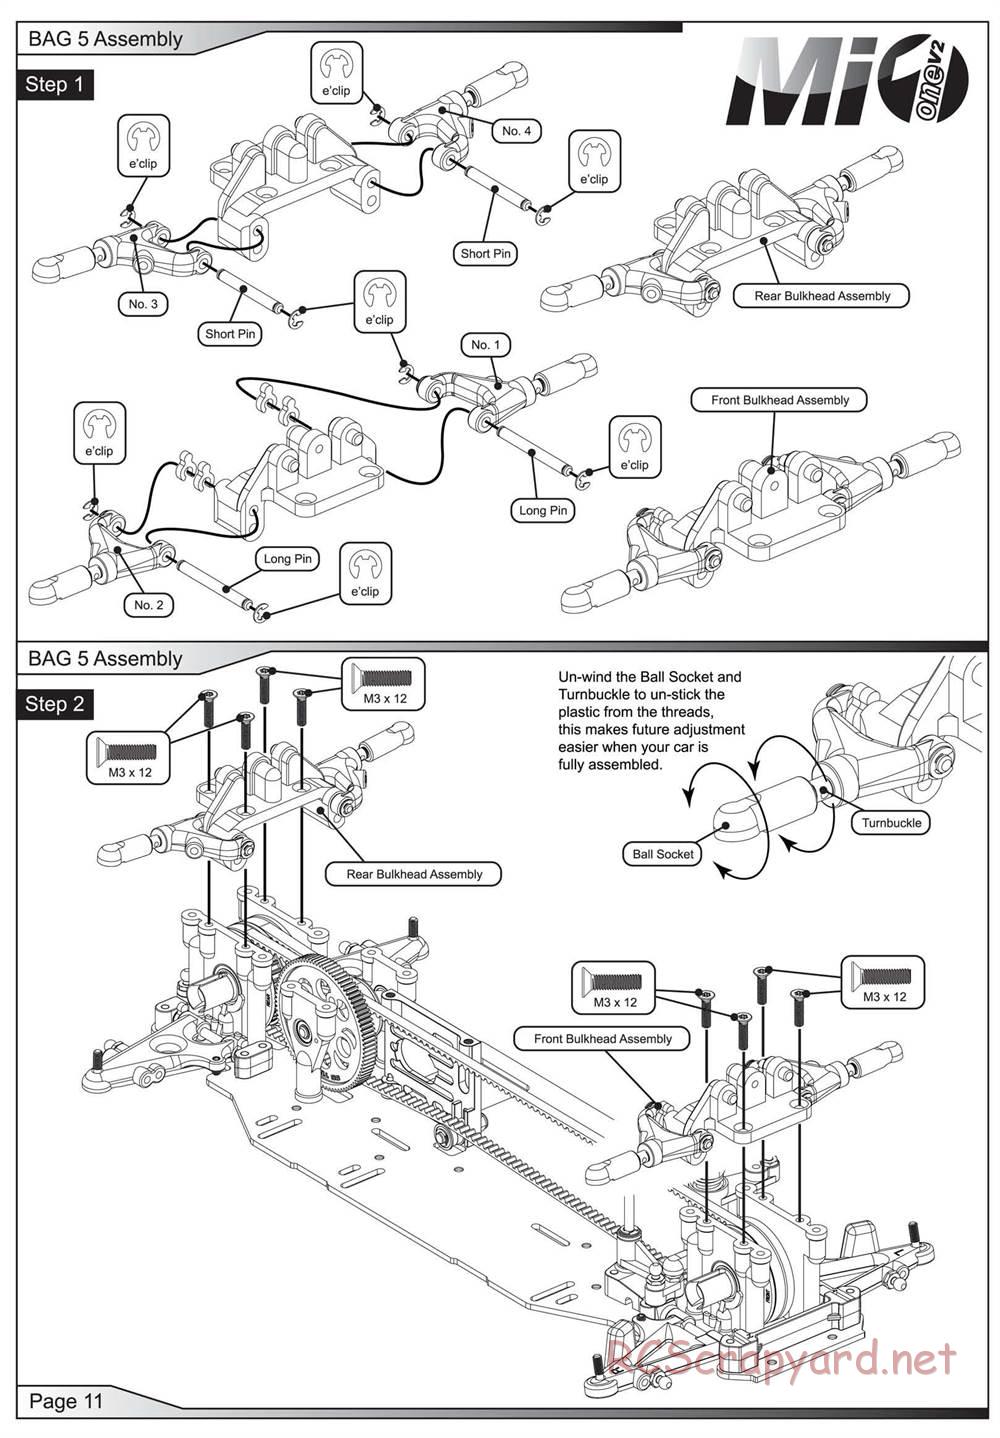 Schumacher - Mi1v2 - Manual - Page 12